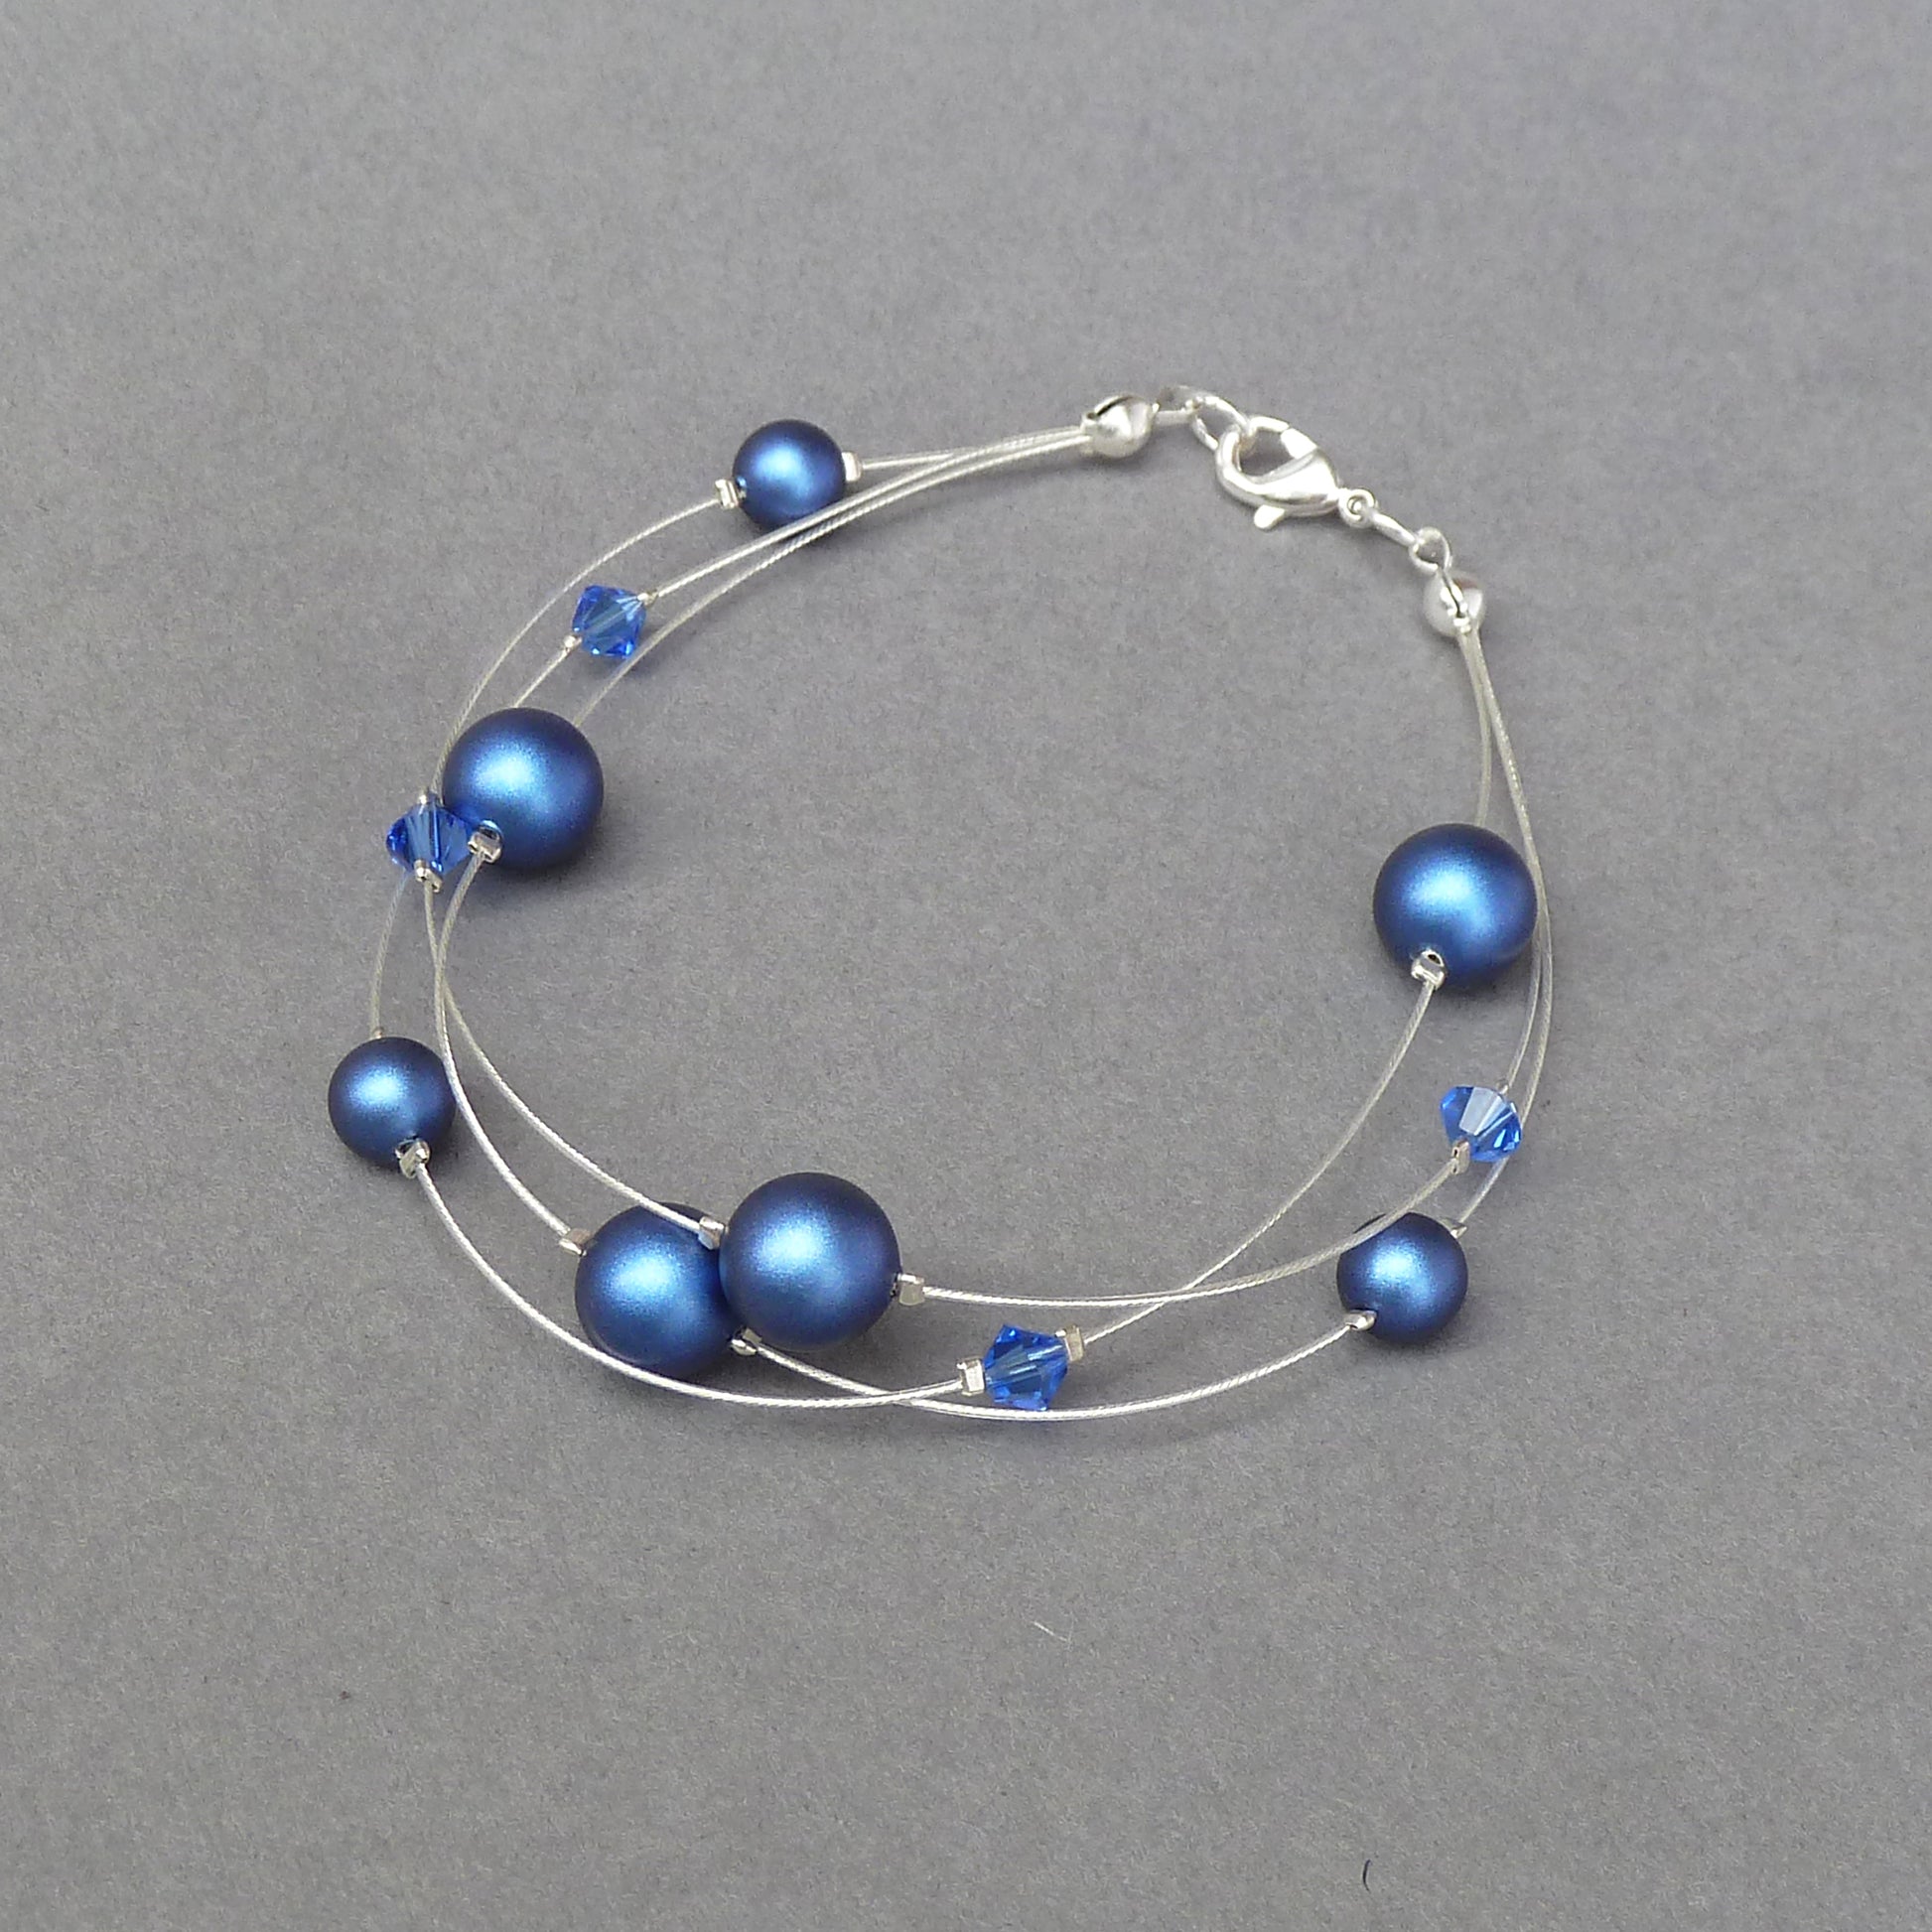 Cobalt blue bridesmaids bracelets